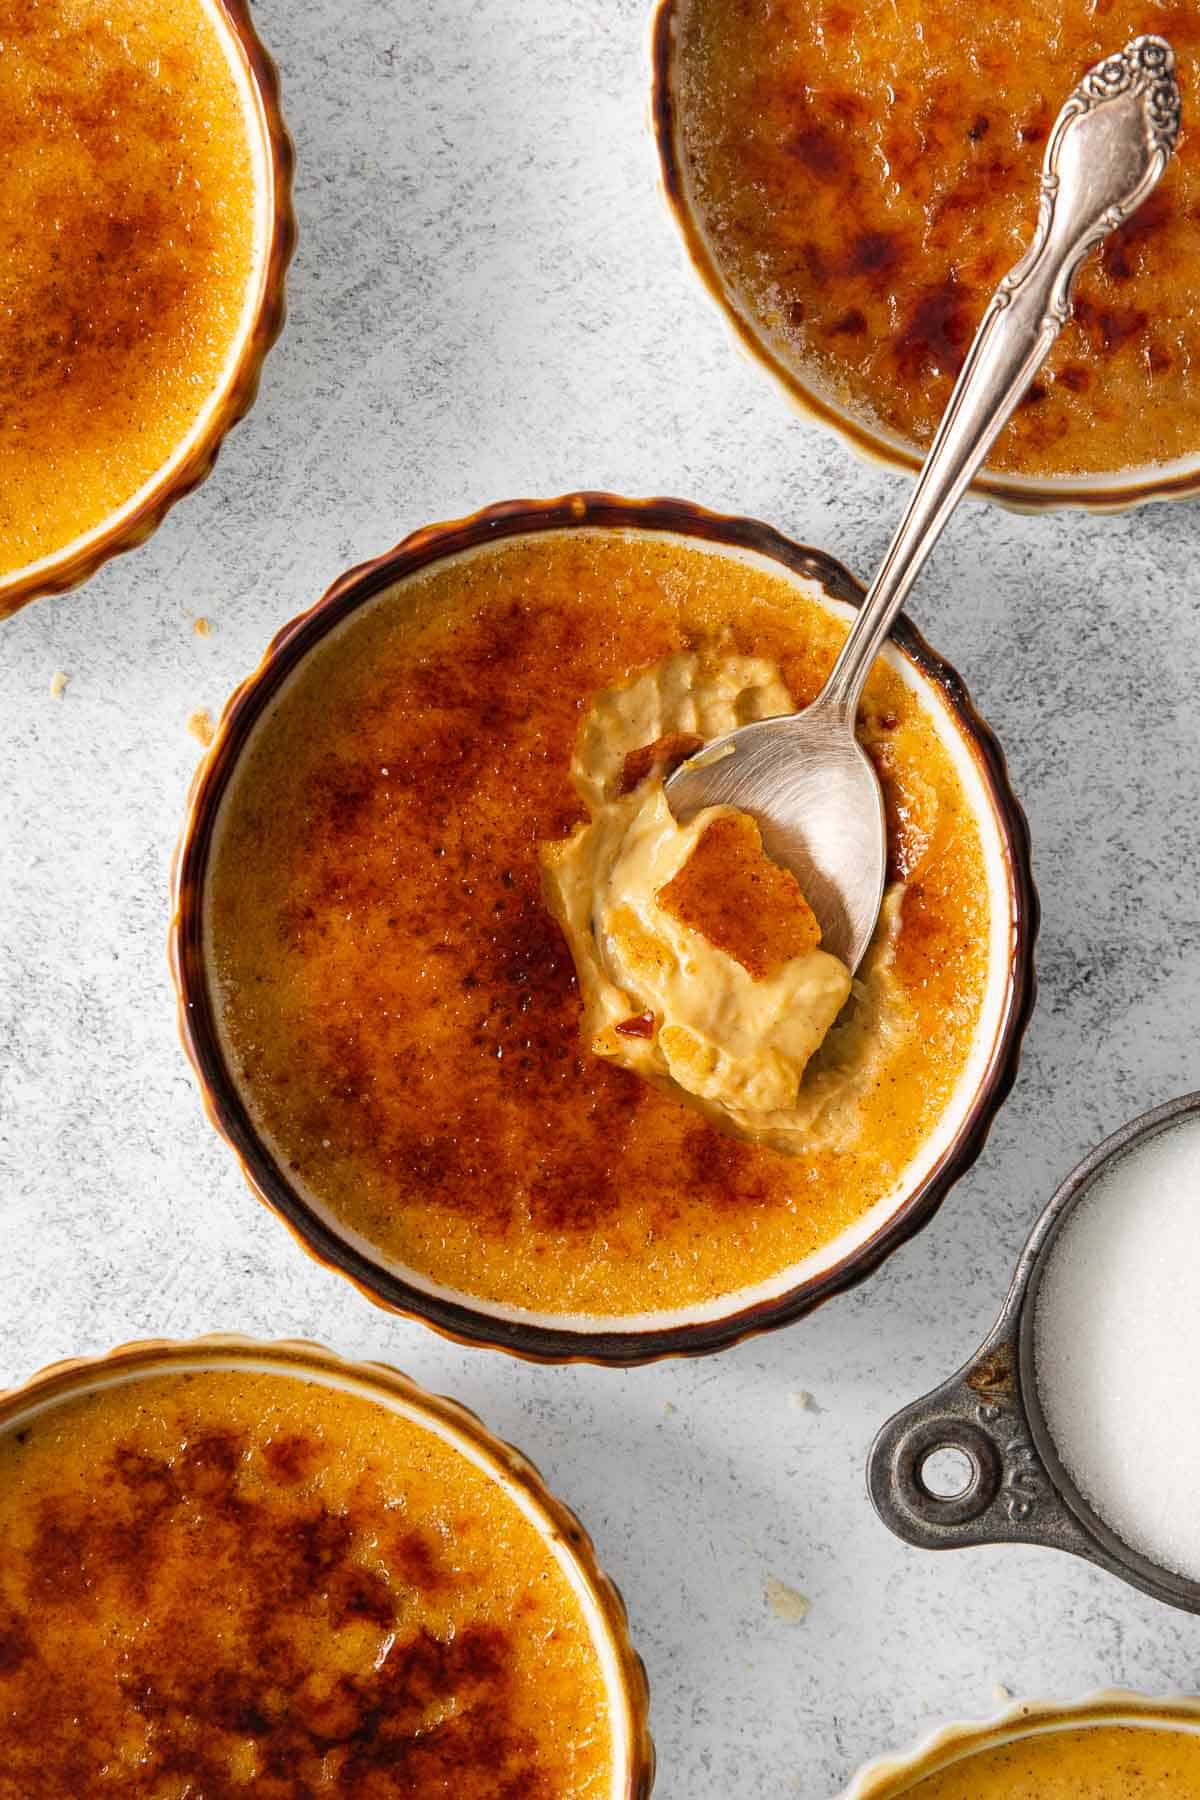 Pumpkin creme brulee in ramekins on a countertop, with a spoon in the ramekin